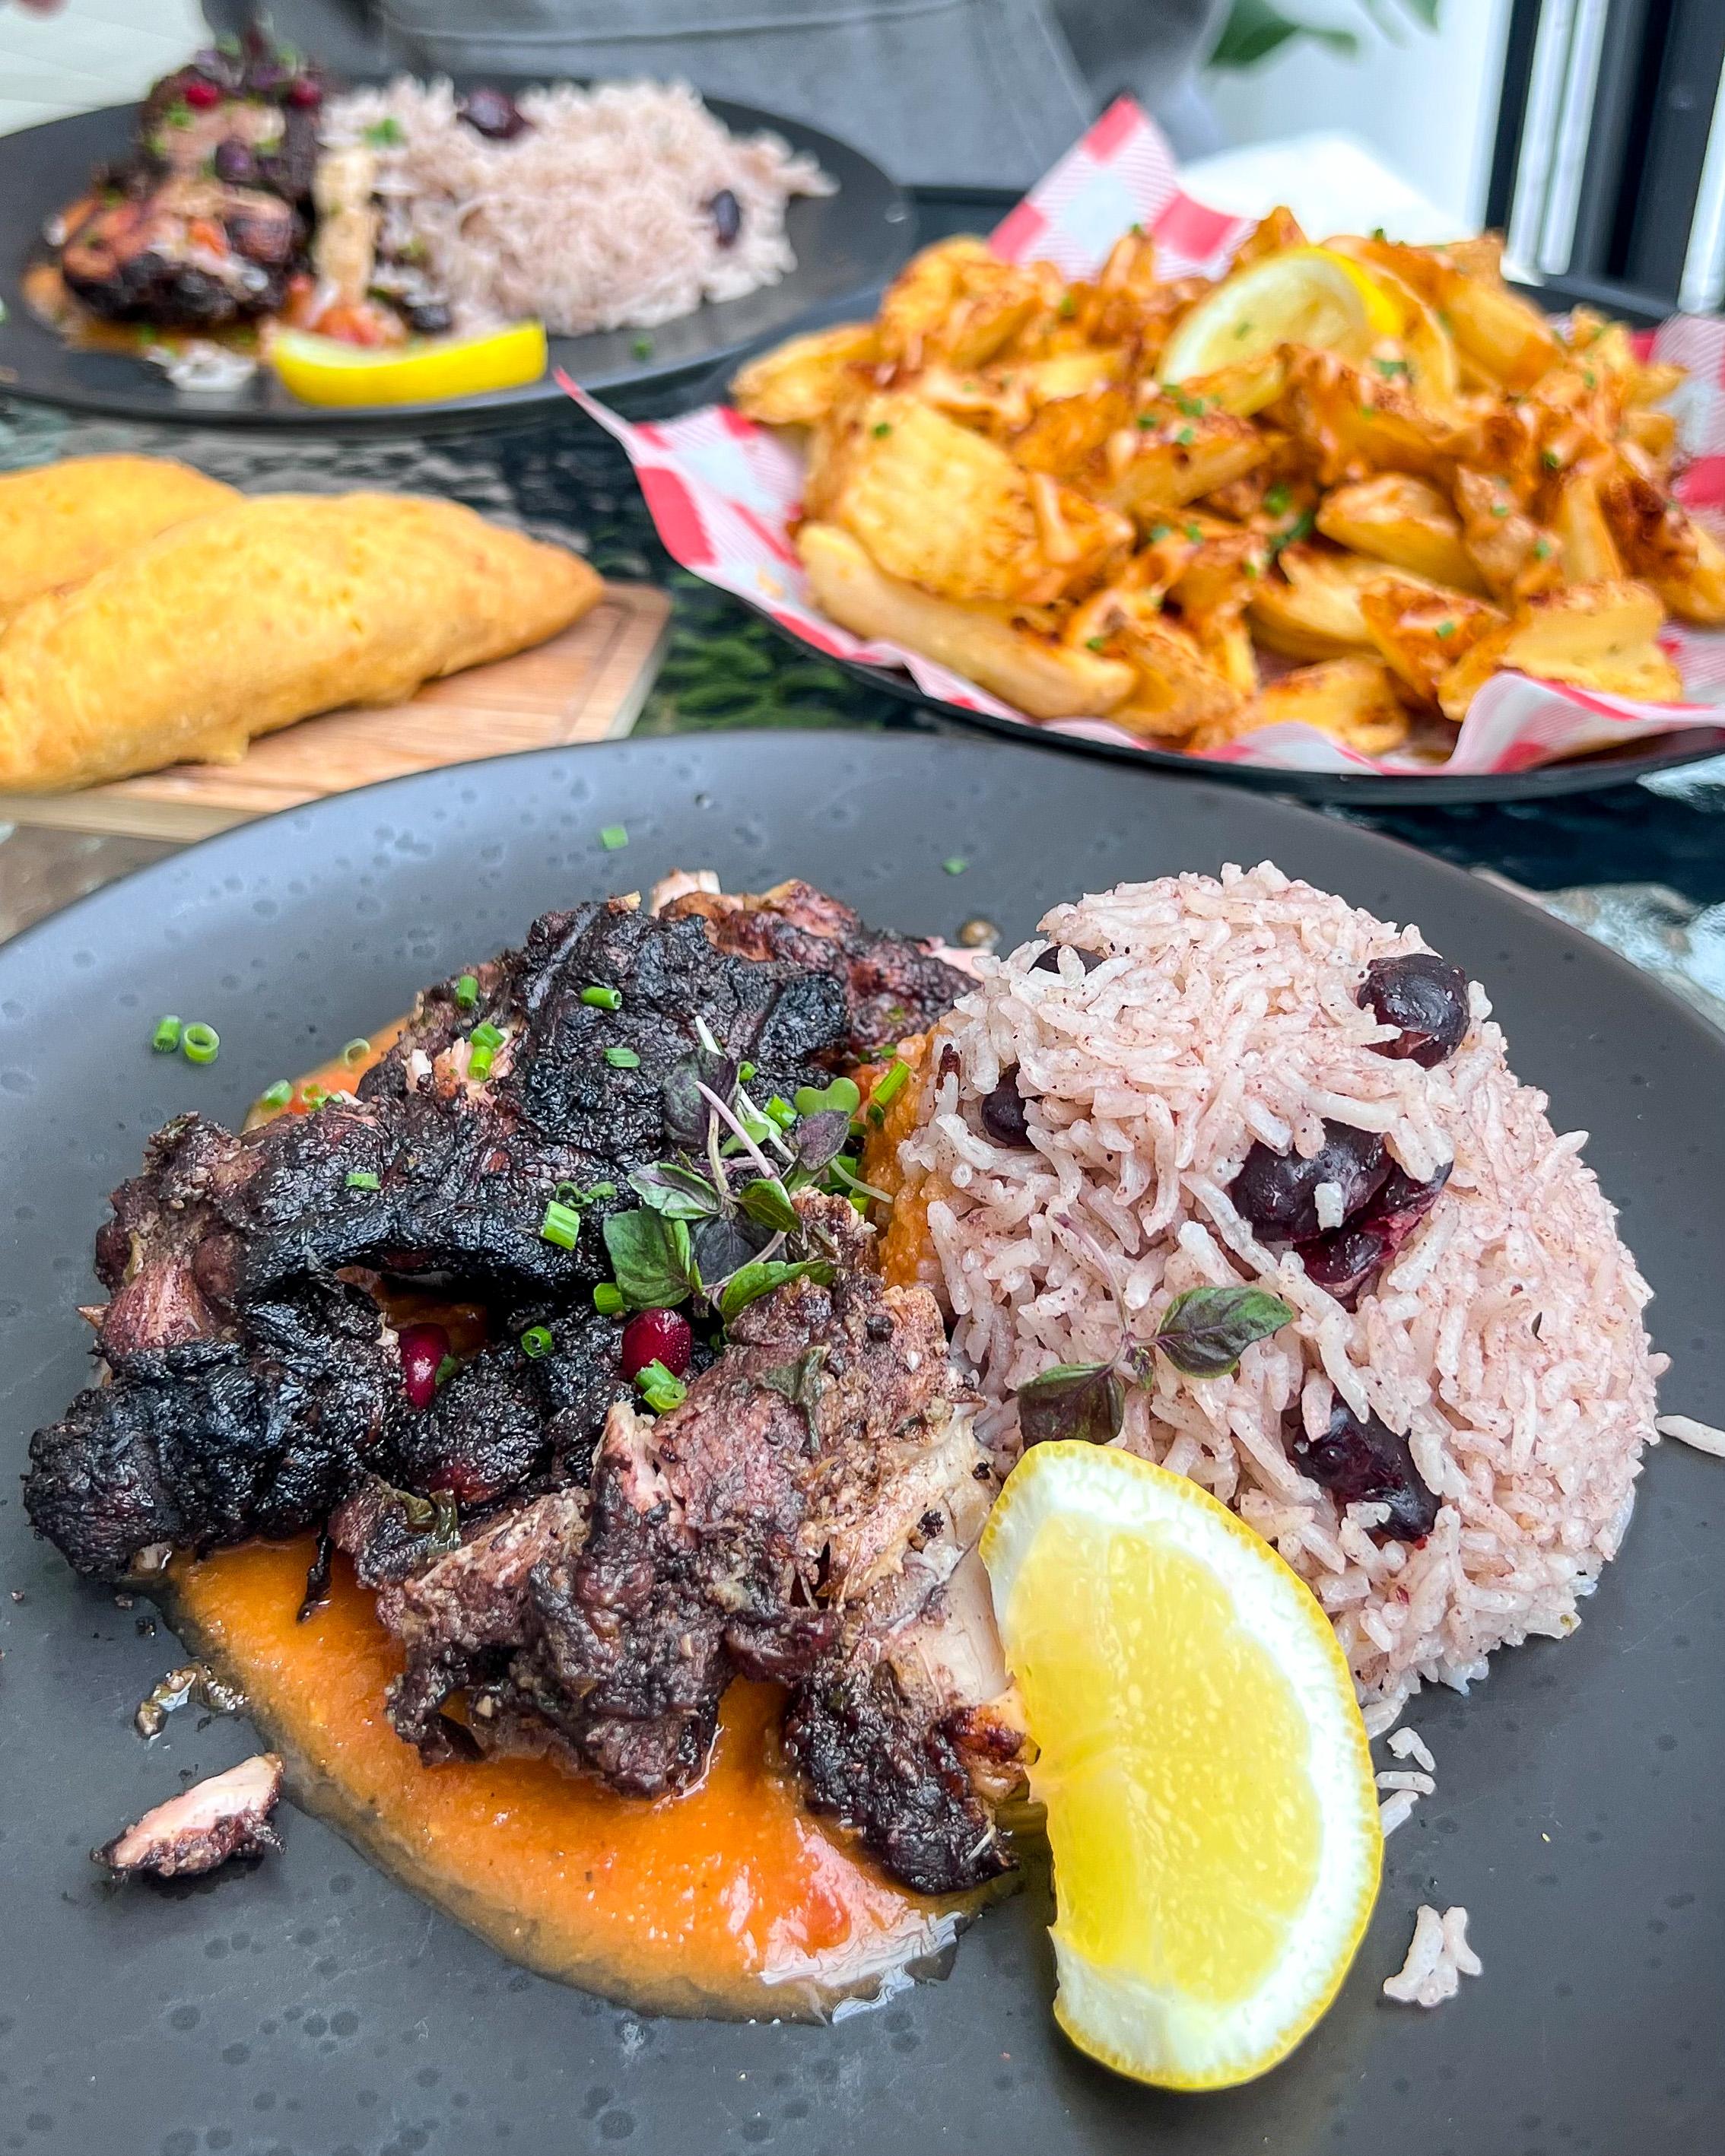 Jerk chicken and rice from Brina's Jamaican kitchen